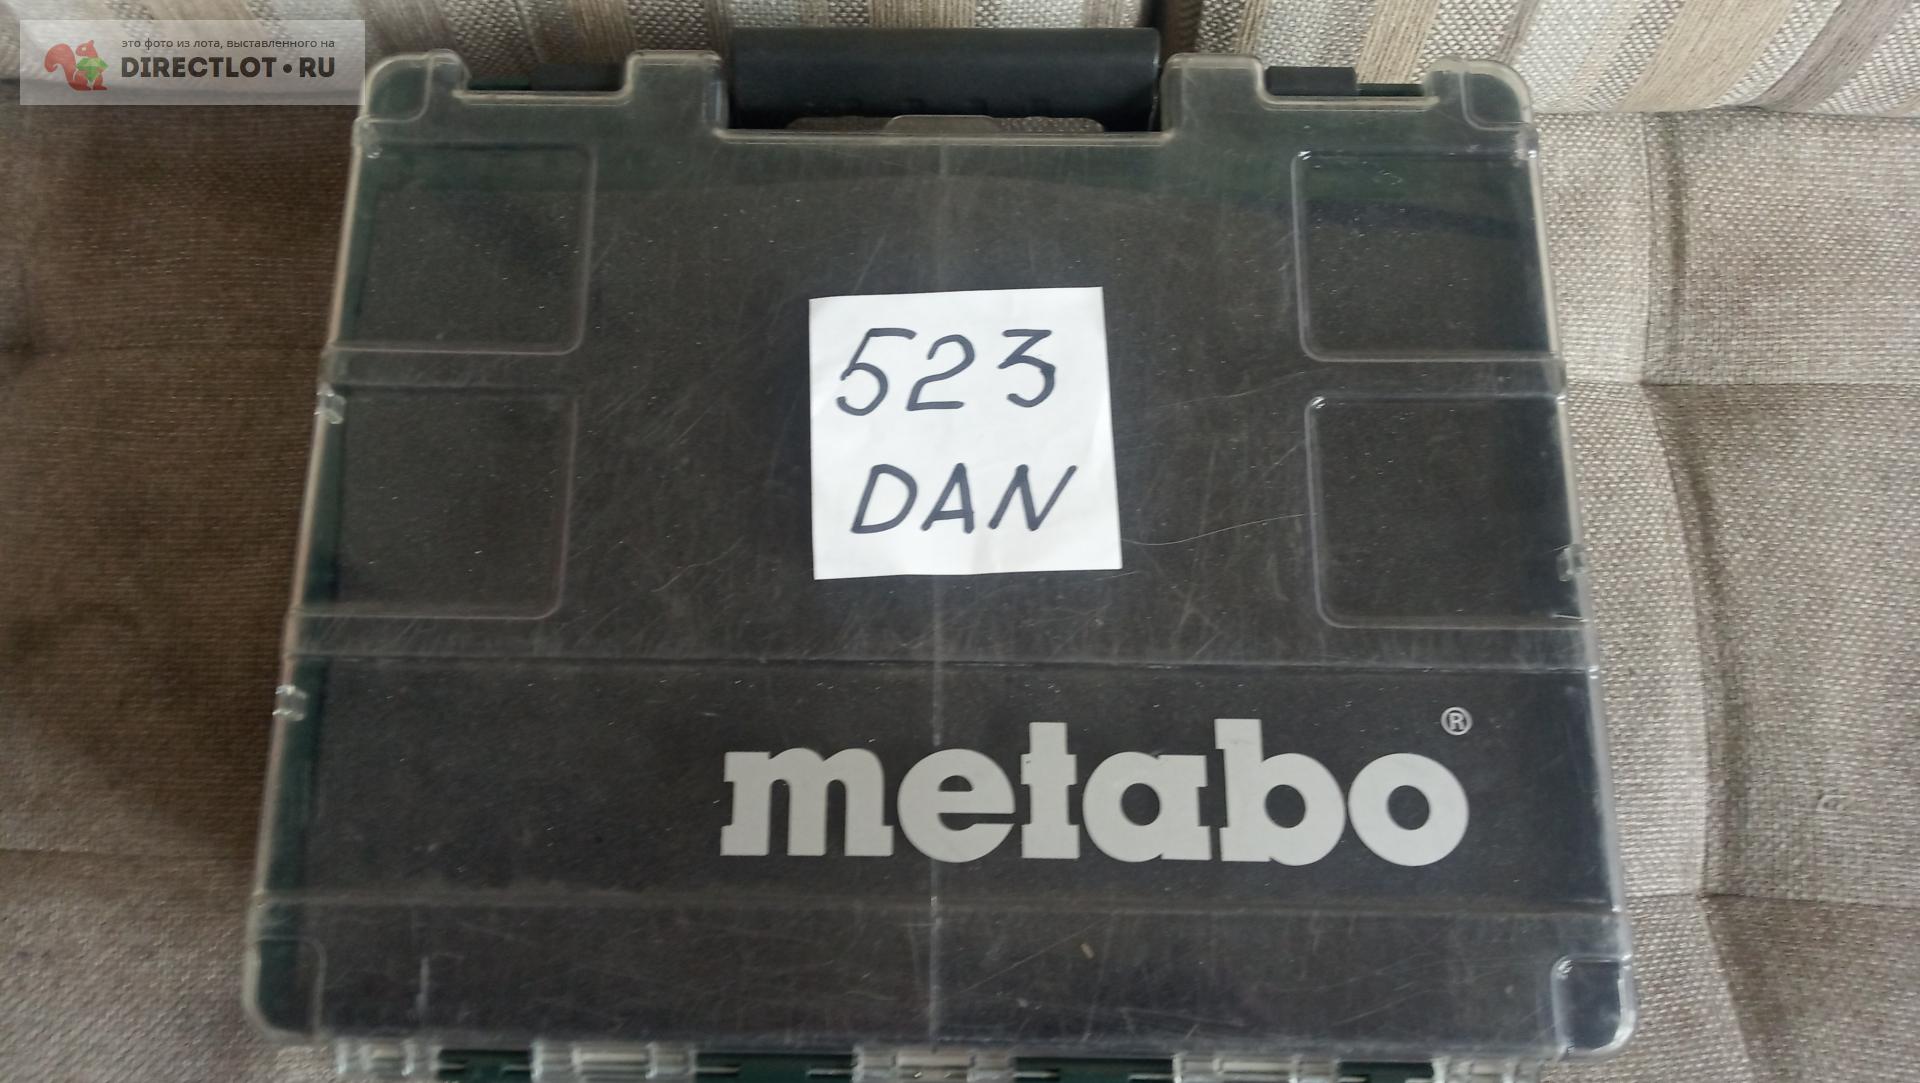 Дрель -шуруповерт Metabo   цена 2000 Р на DIRECTLOT.RU .